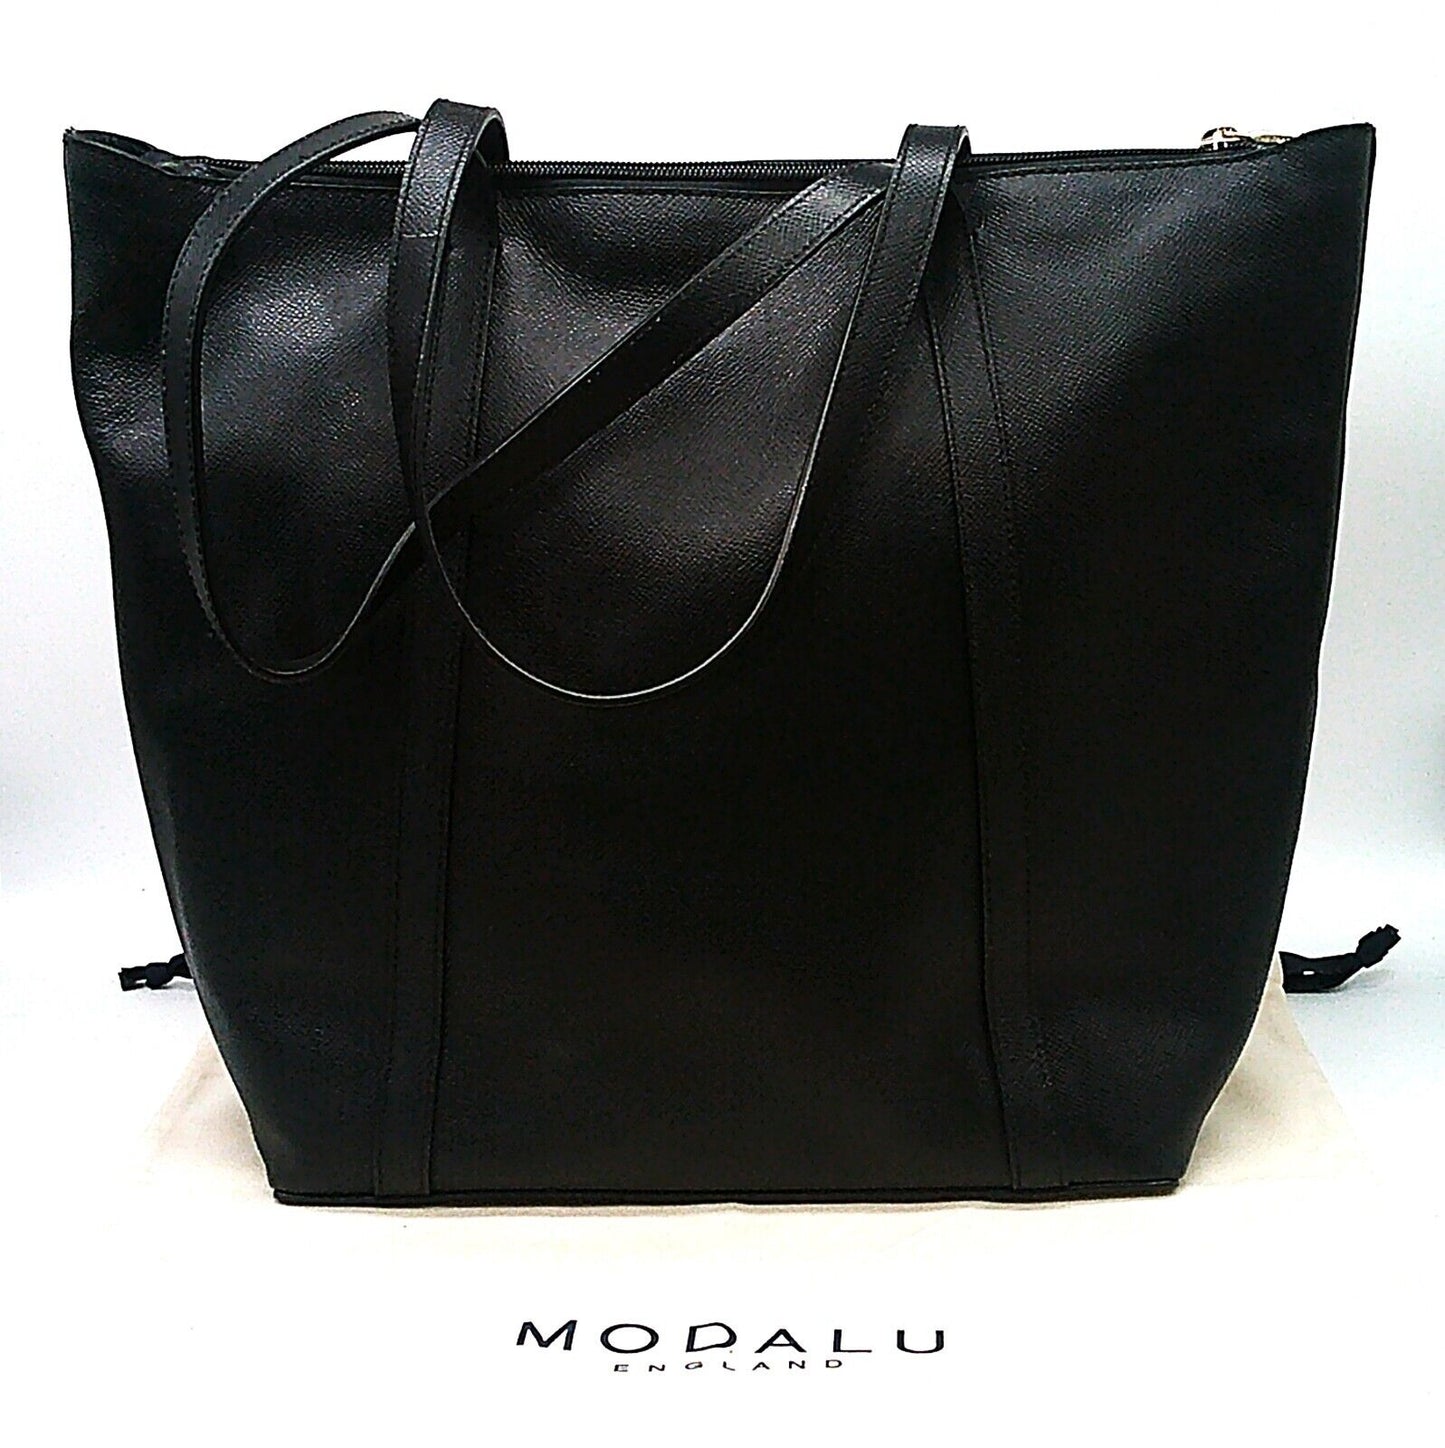 Leather Modalu Poppy Black Tote Bag RRP £149